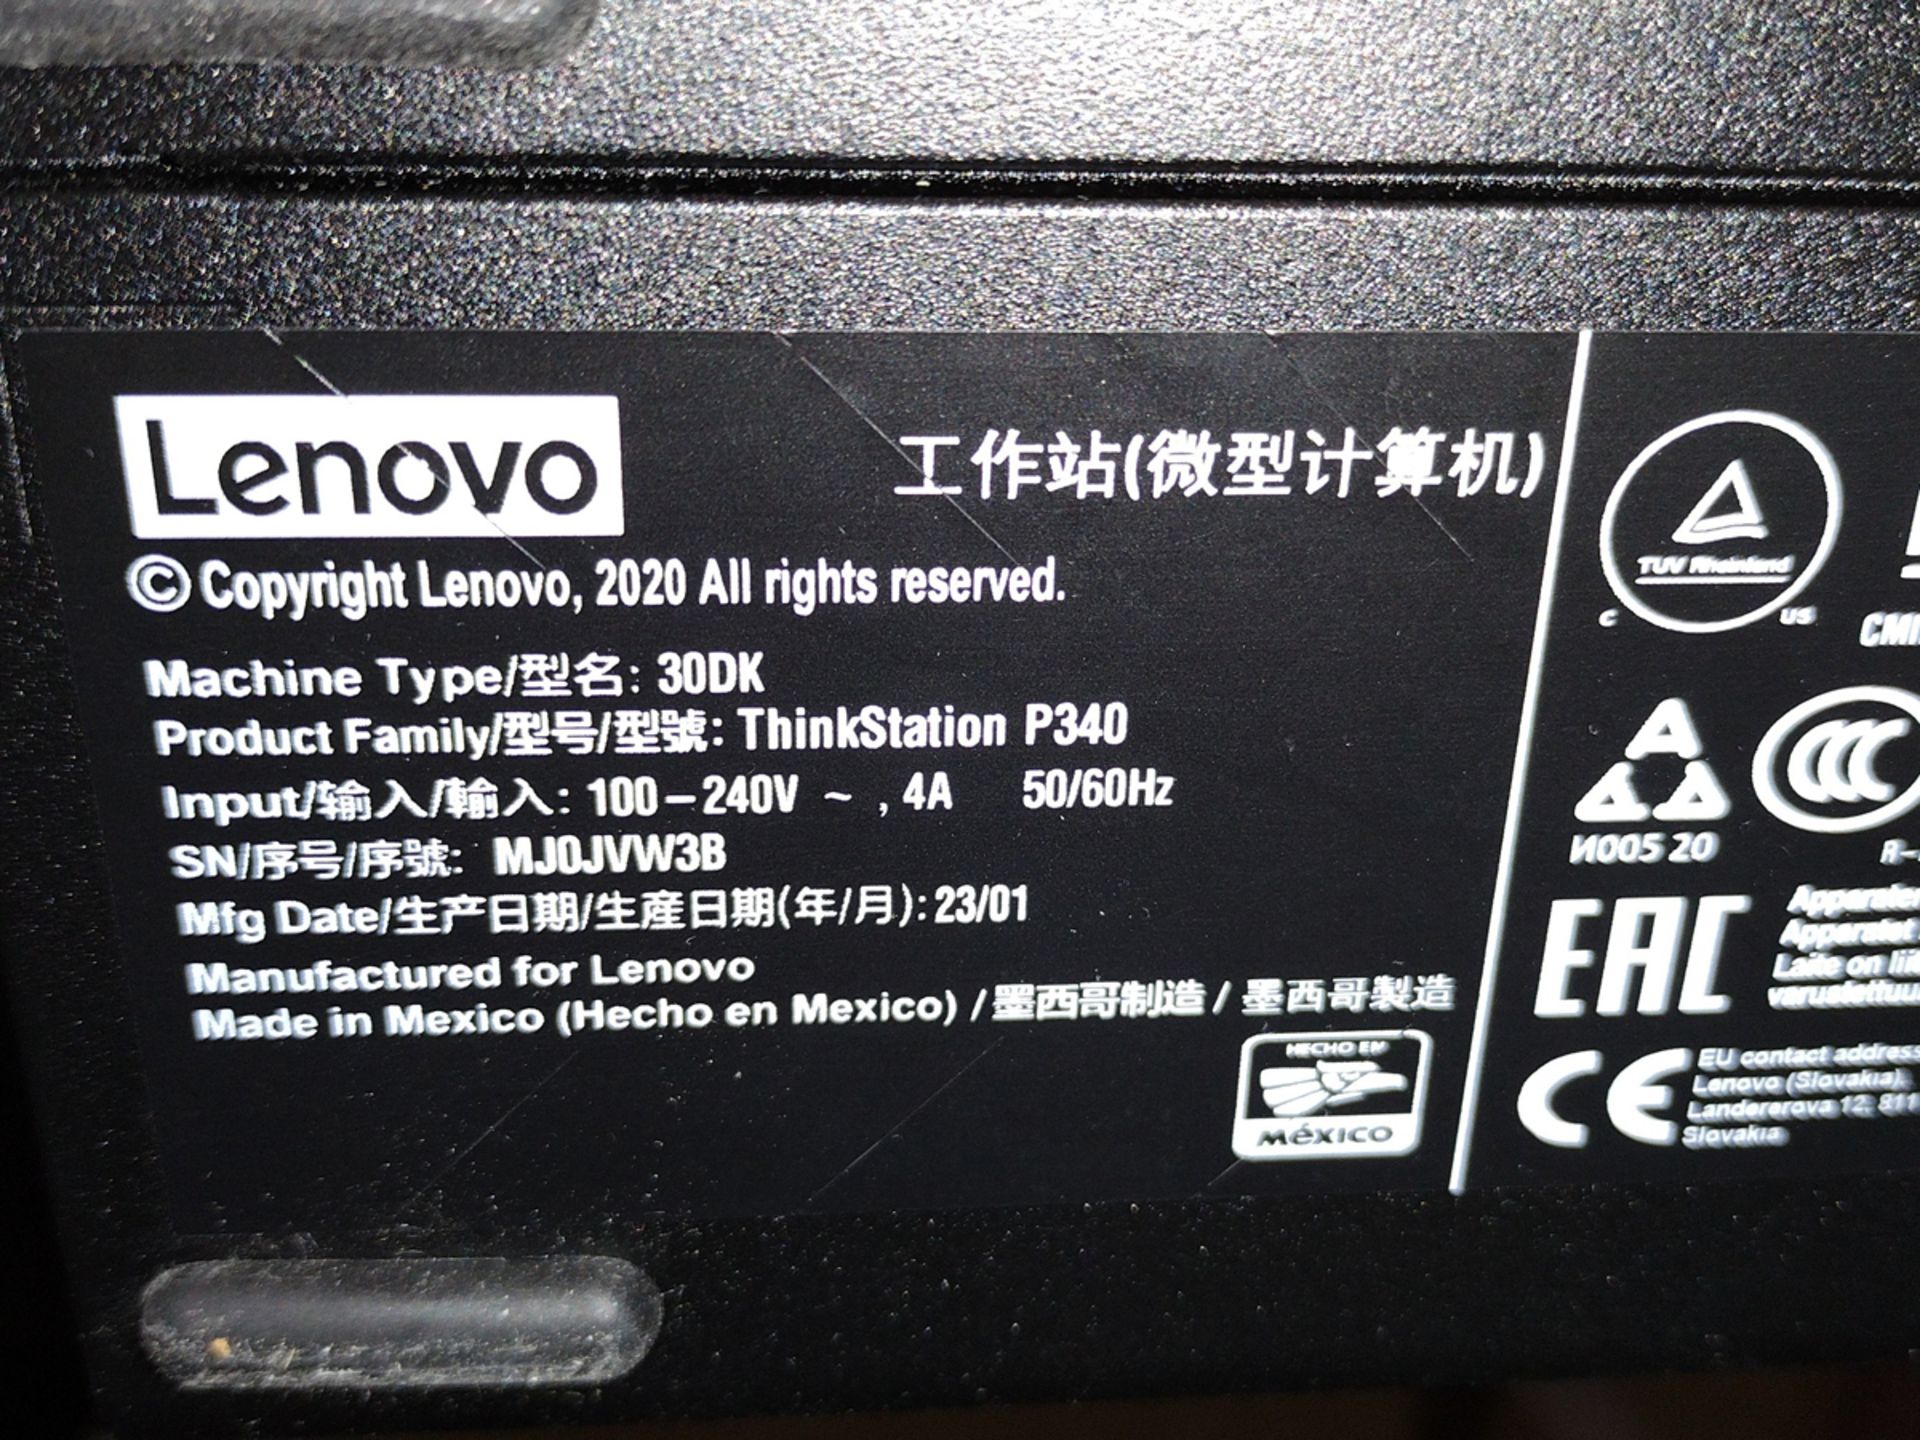 Lenovo P340 ThinkStation i7 PC w/ Monitor and Keyboard - Image 2 of 2